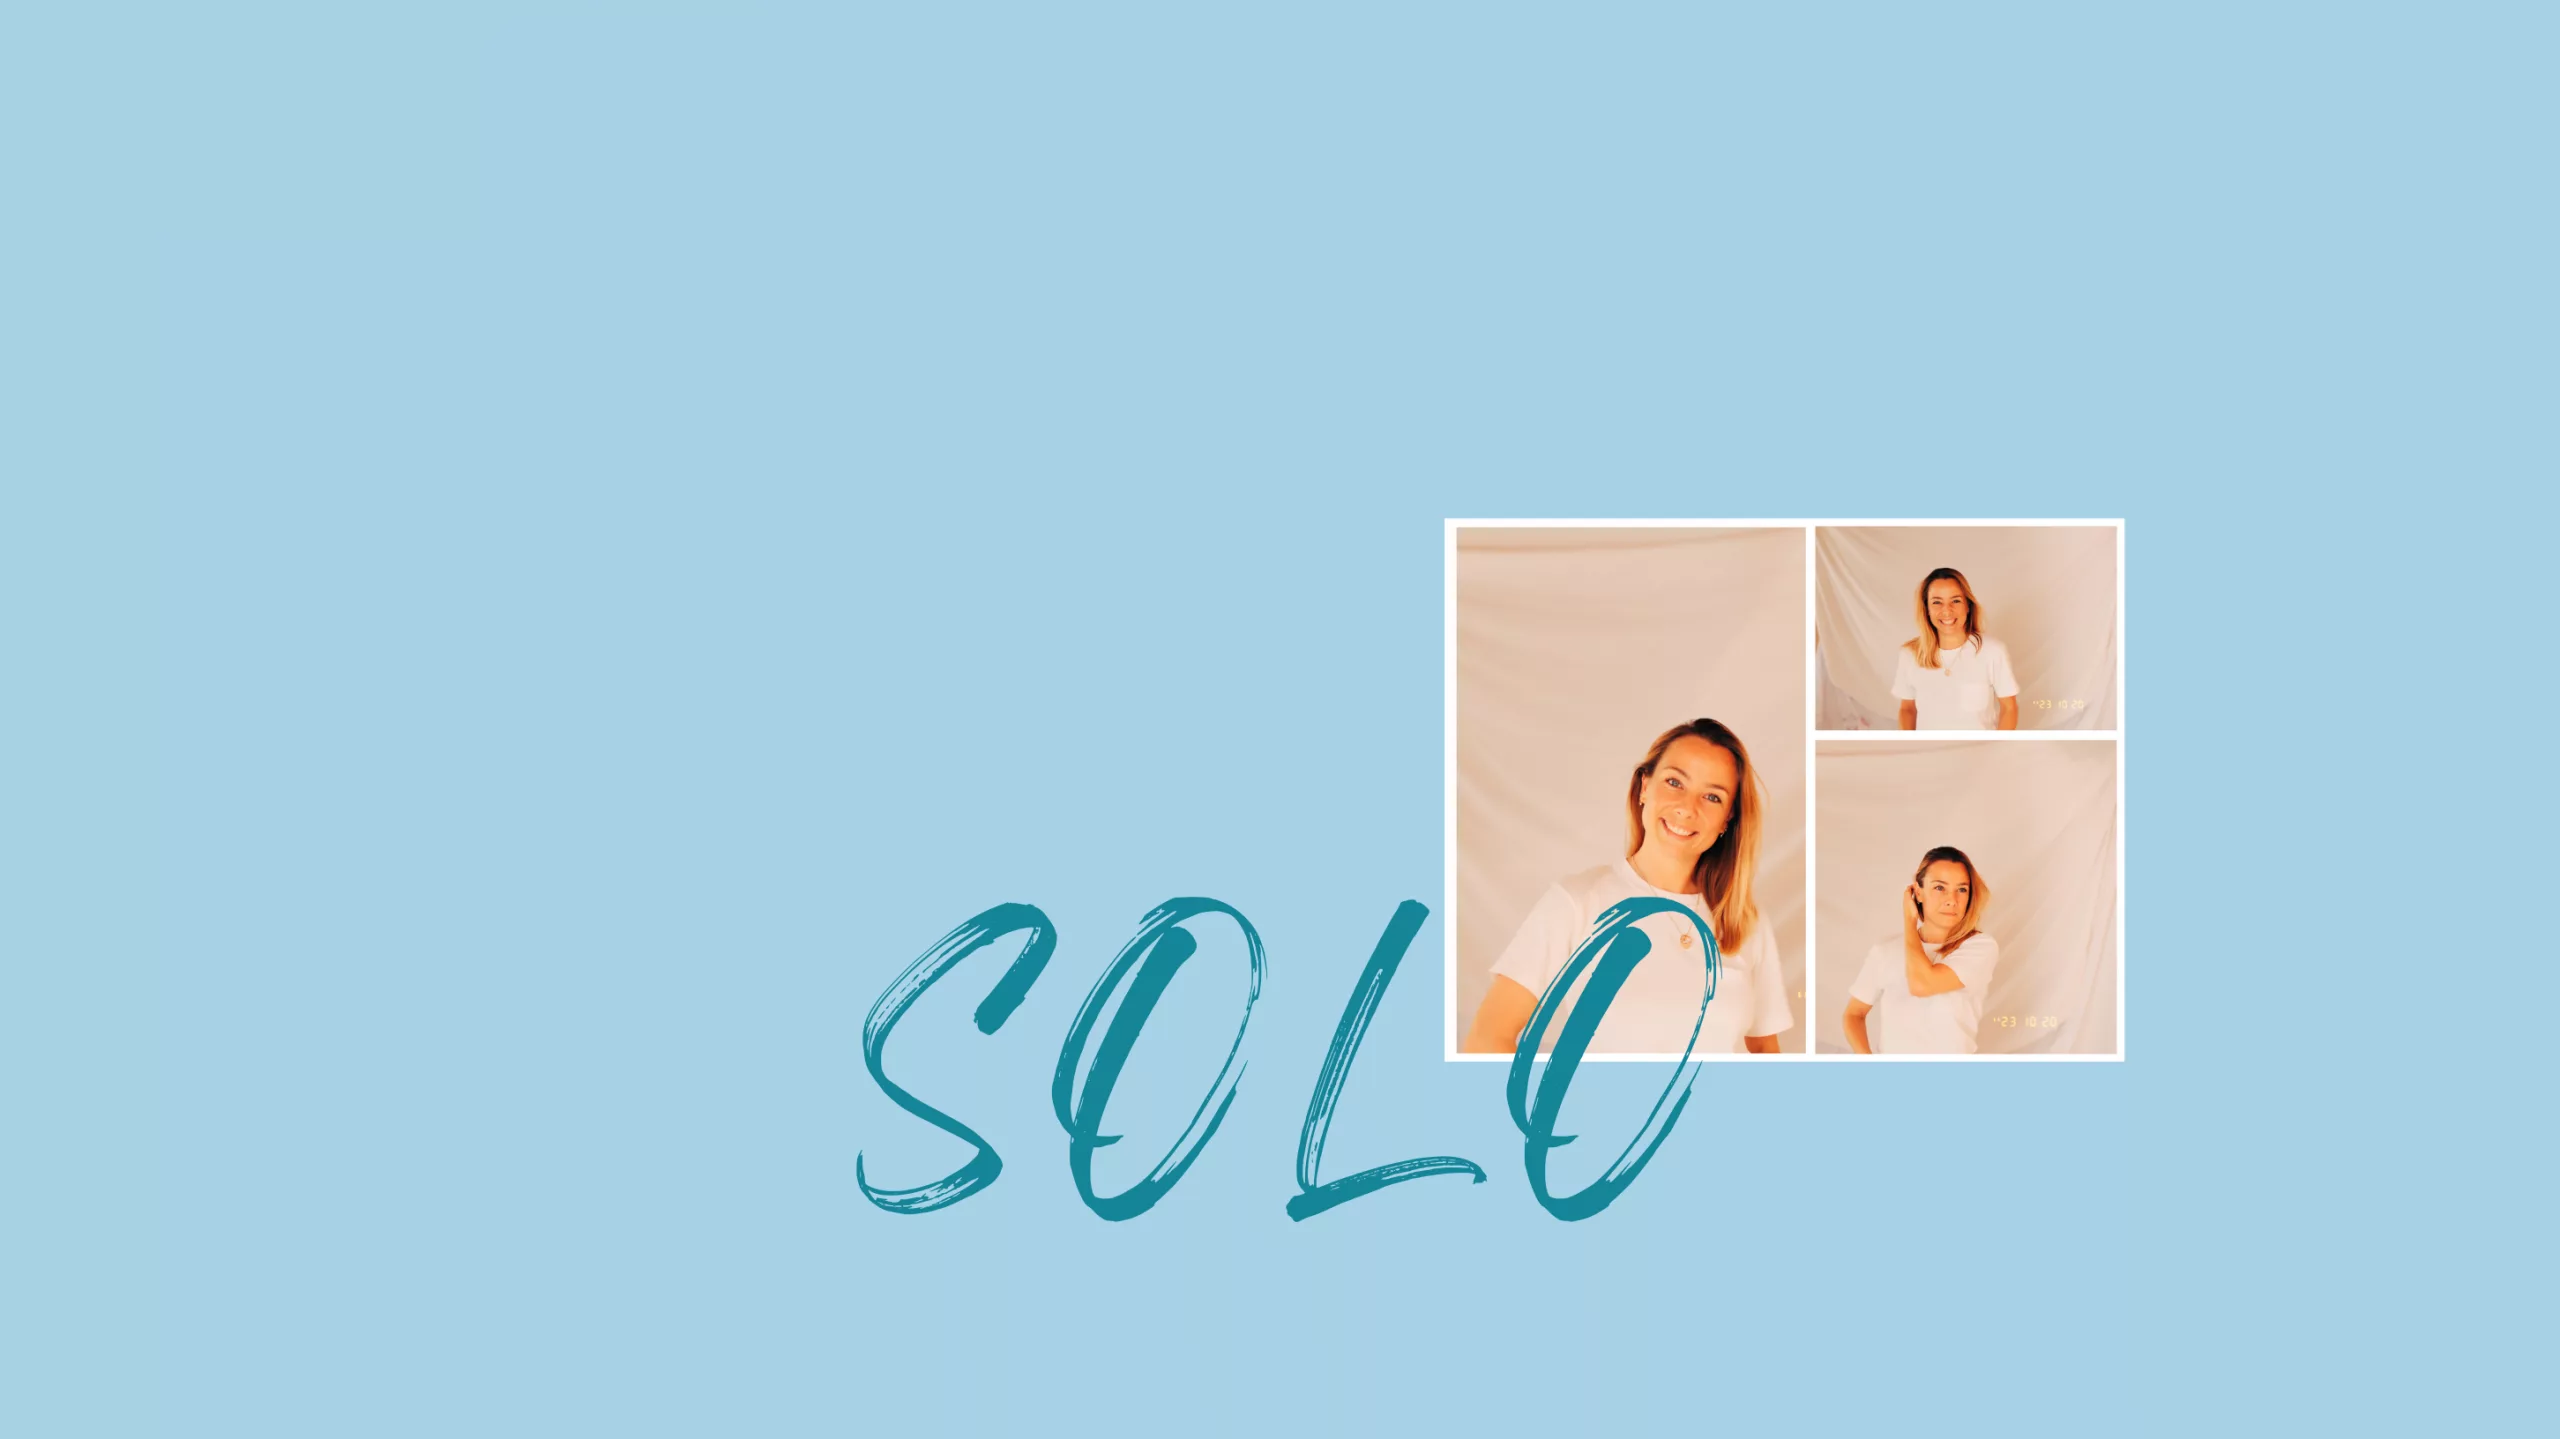 Logo du Livre SOLO + portraits de l'autrice Melissa Taulbee